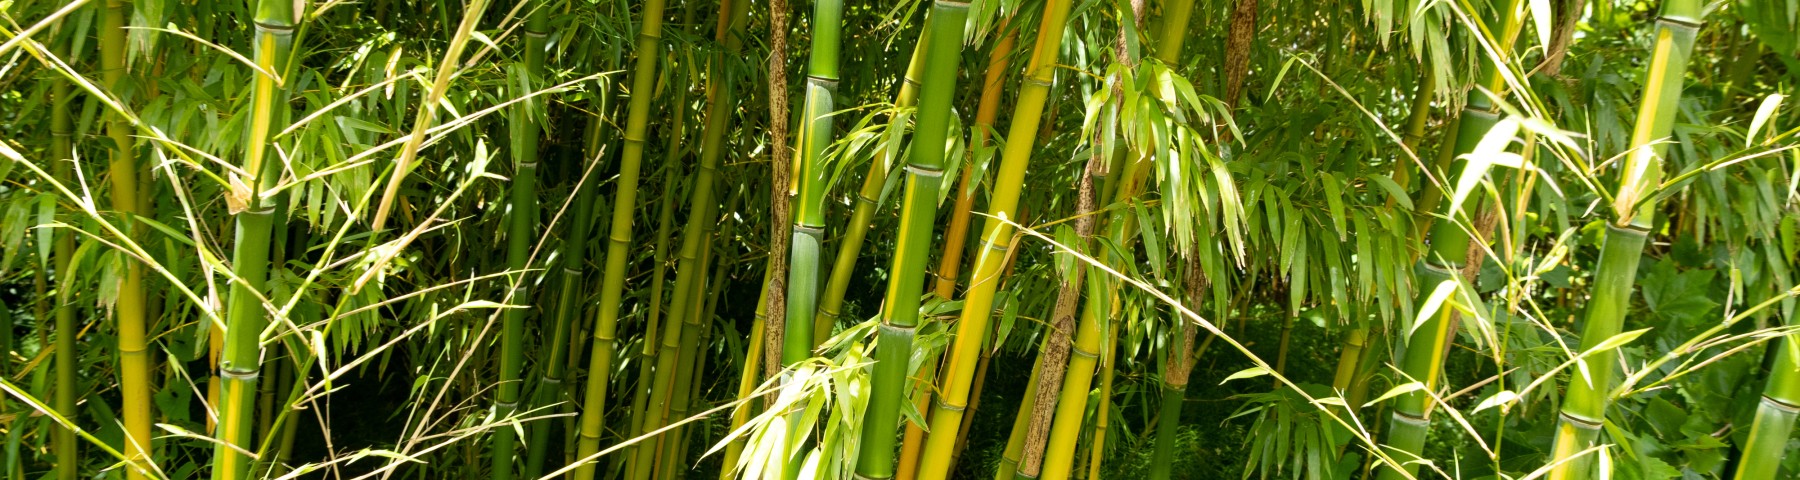 Bamboe tuin op Netl.nl_-9910.jpg